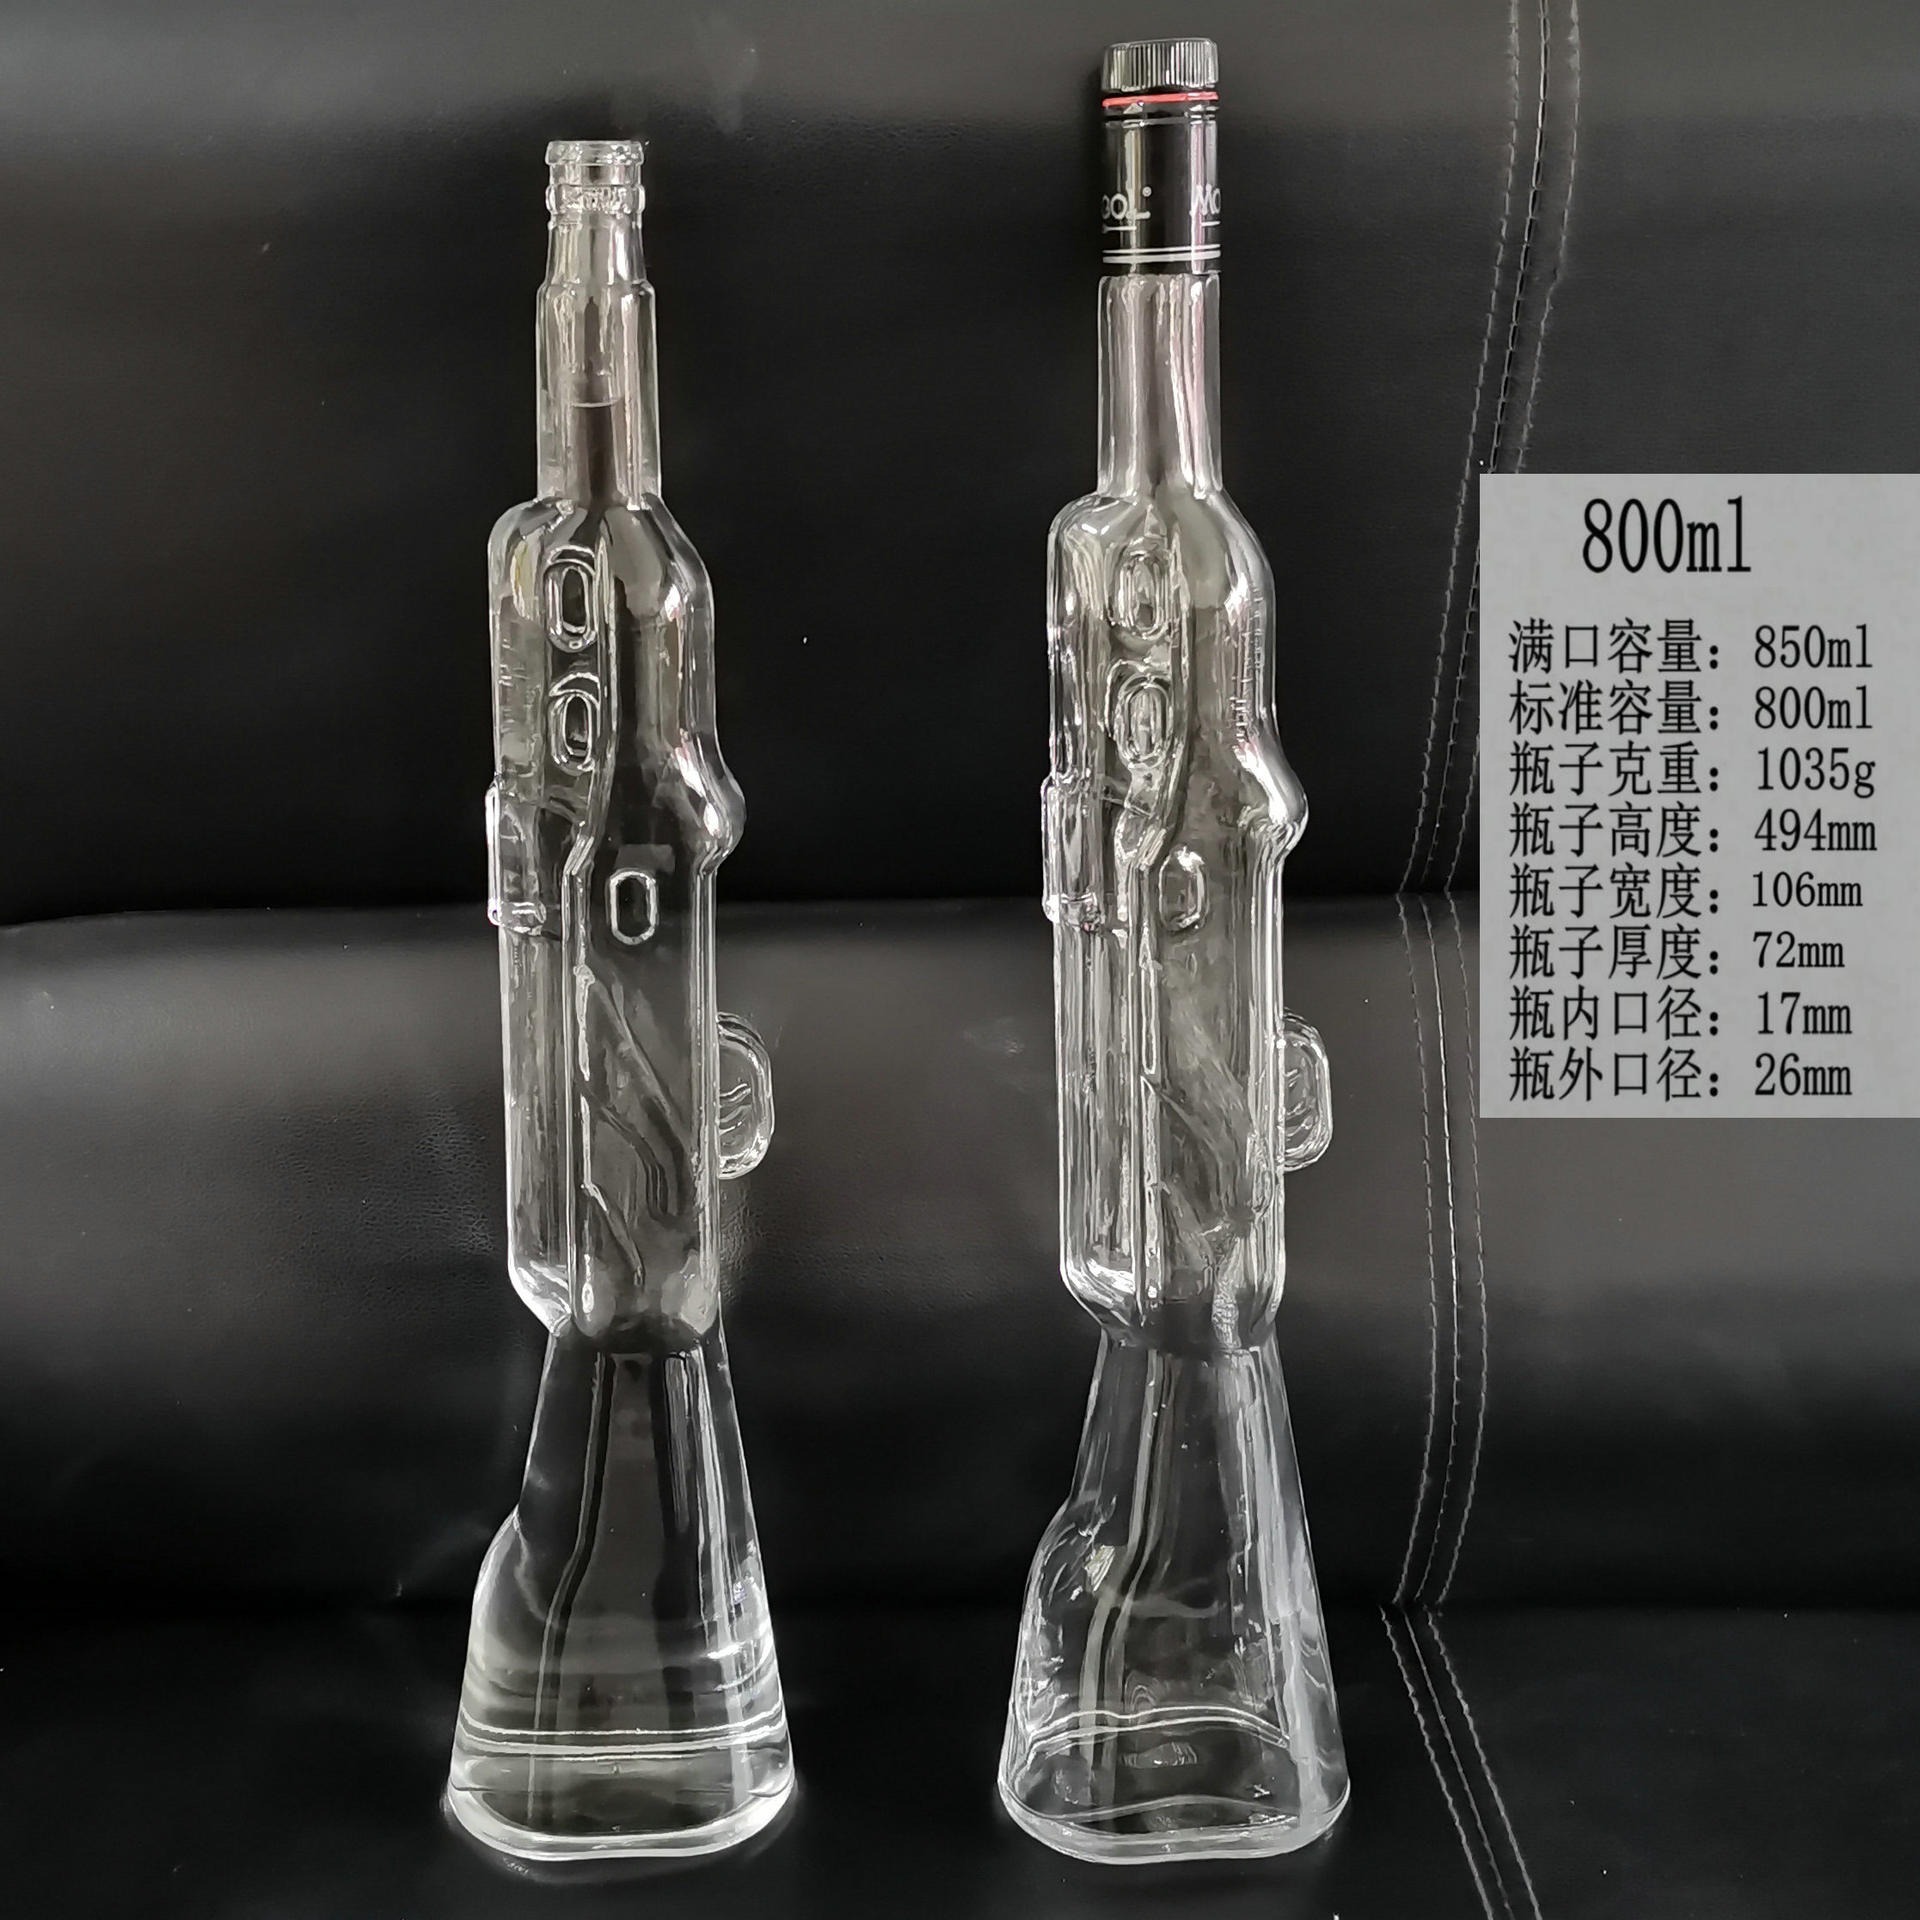 玻璃玩具酒瓶，工艺品新款果汁玻璃瓶800ml，玻璃瓶生产厂家批发订购创意玻璃制品隆安